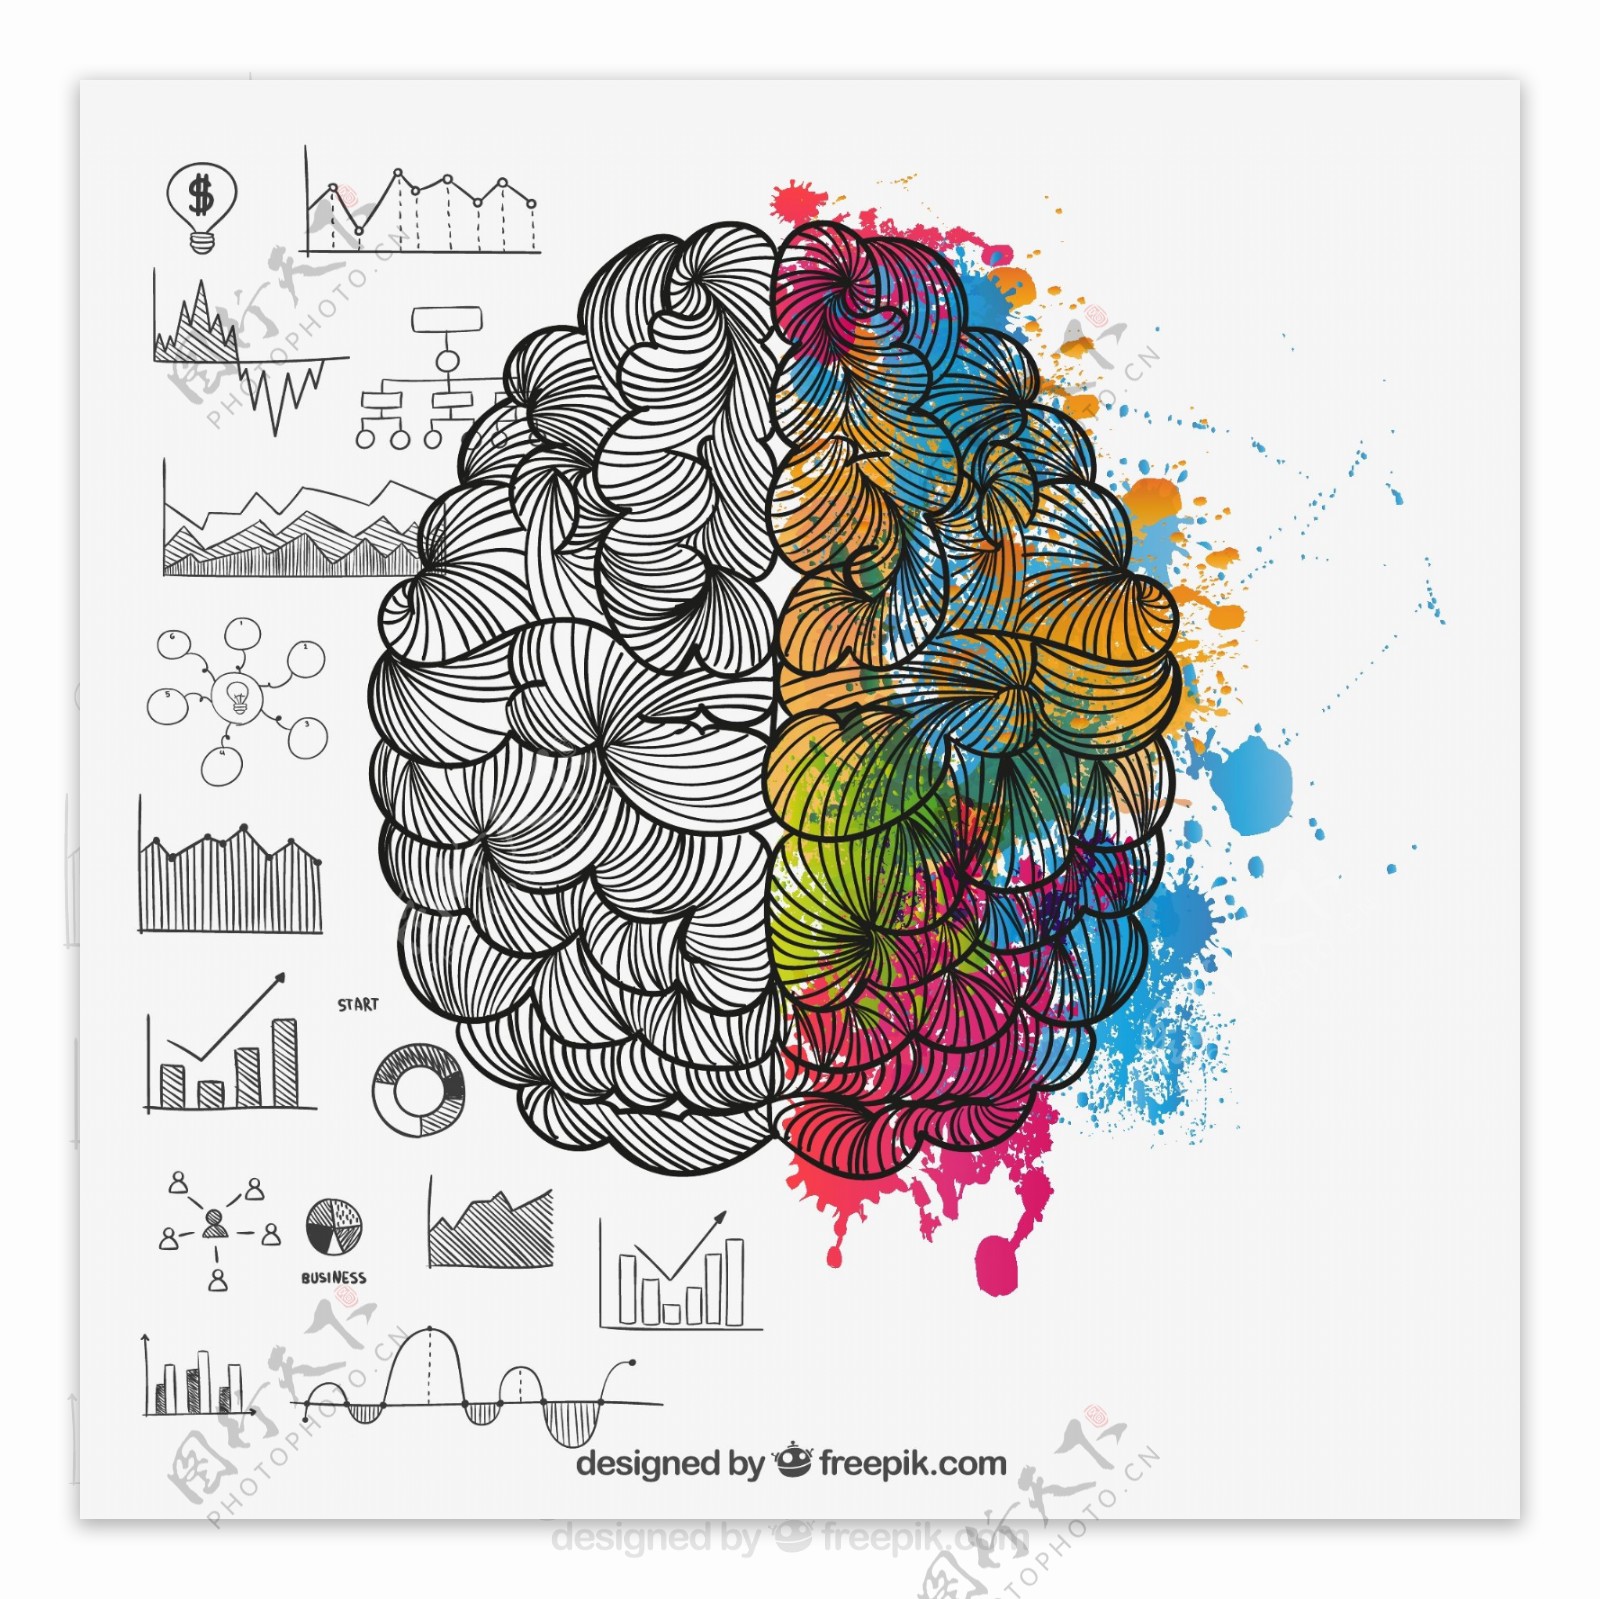 彩绘大脑设计矢量素材